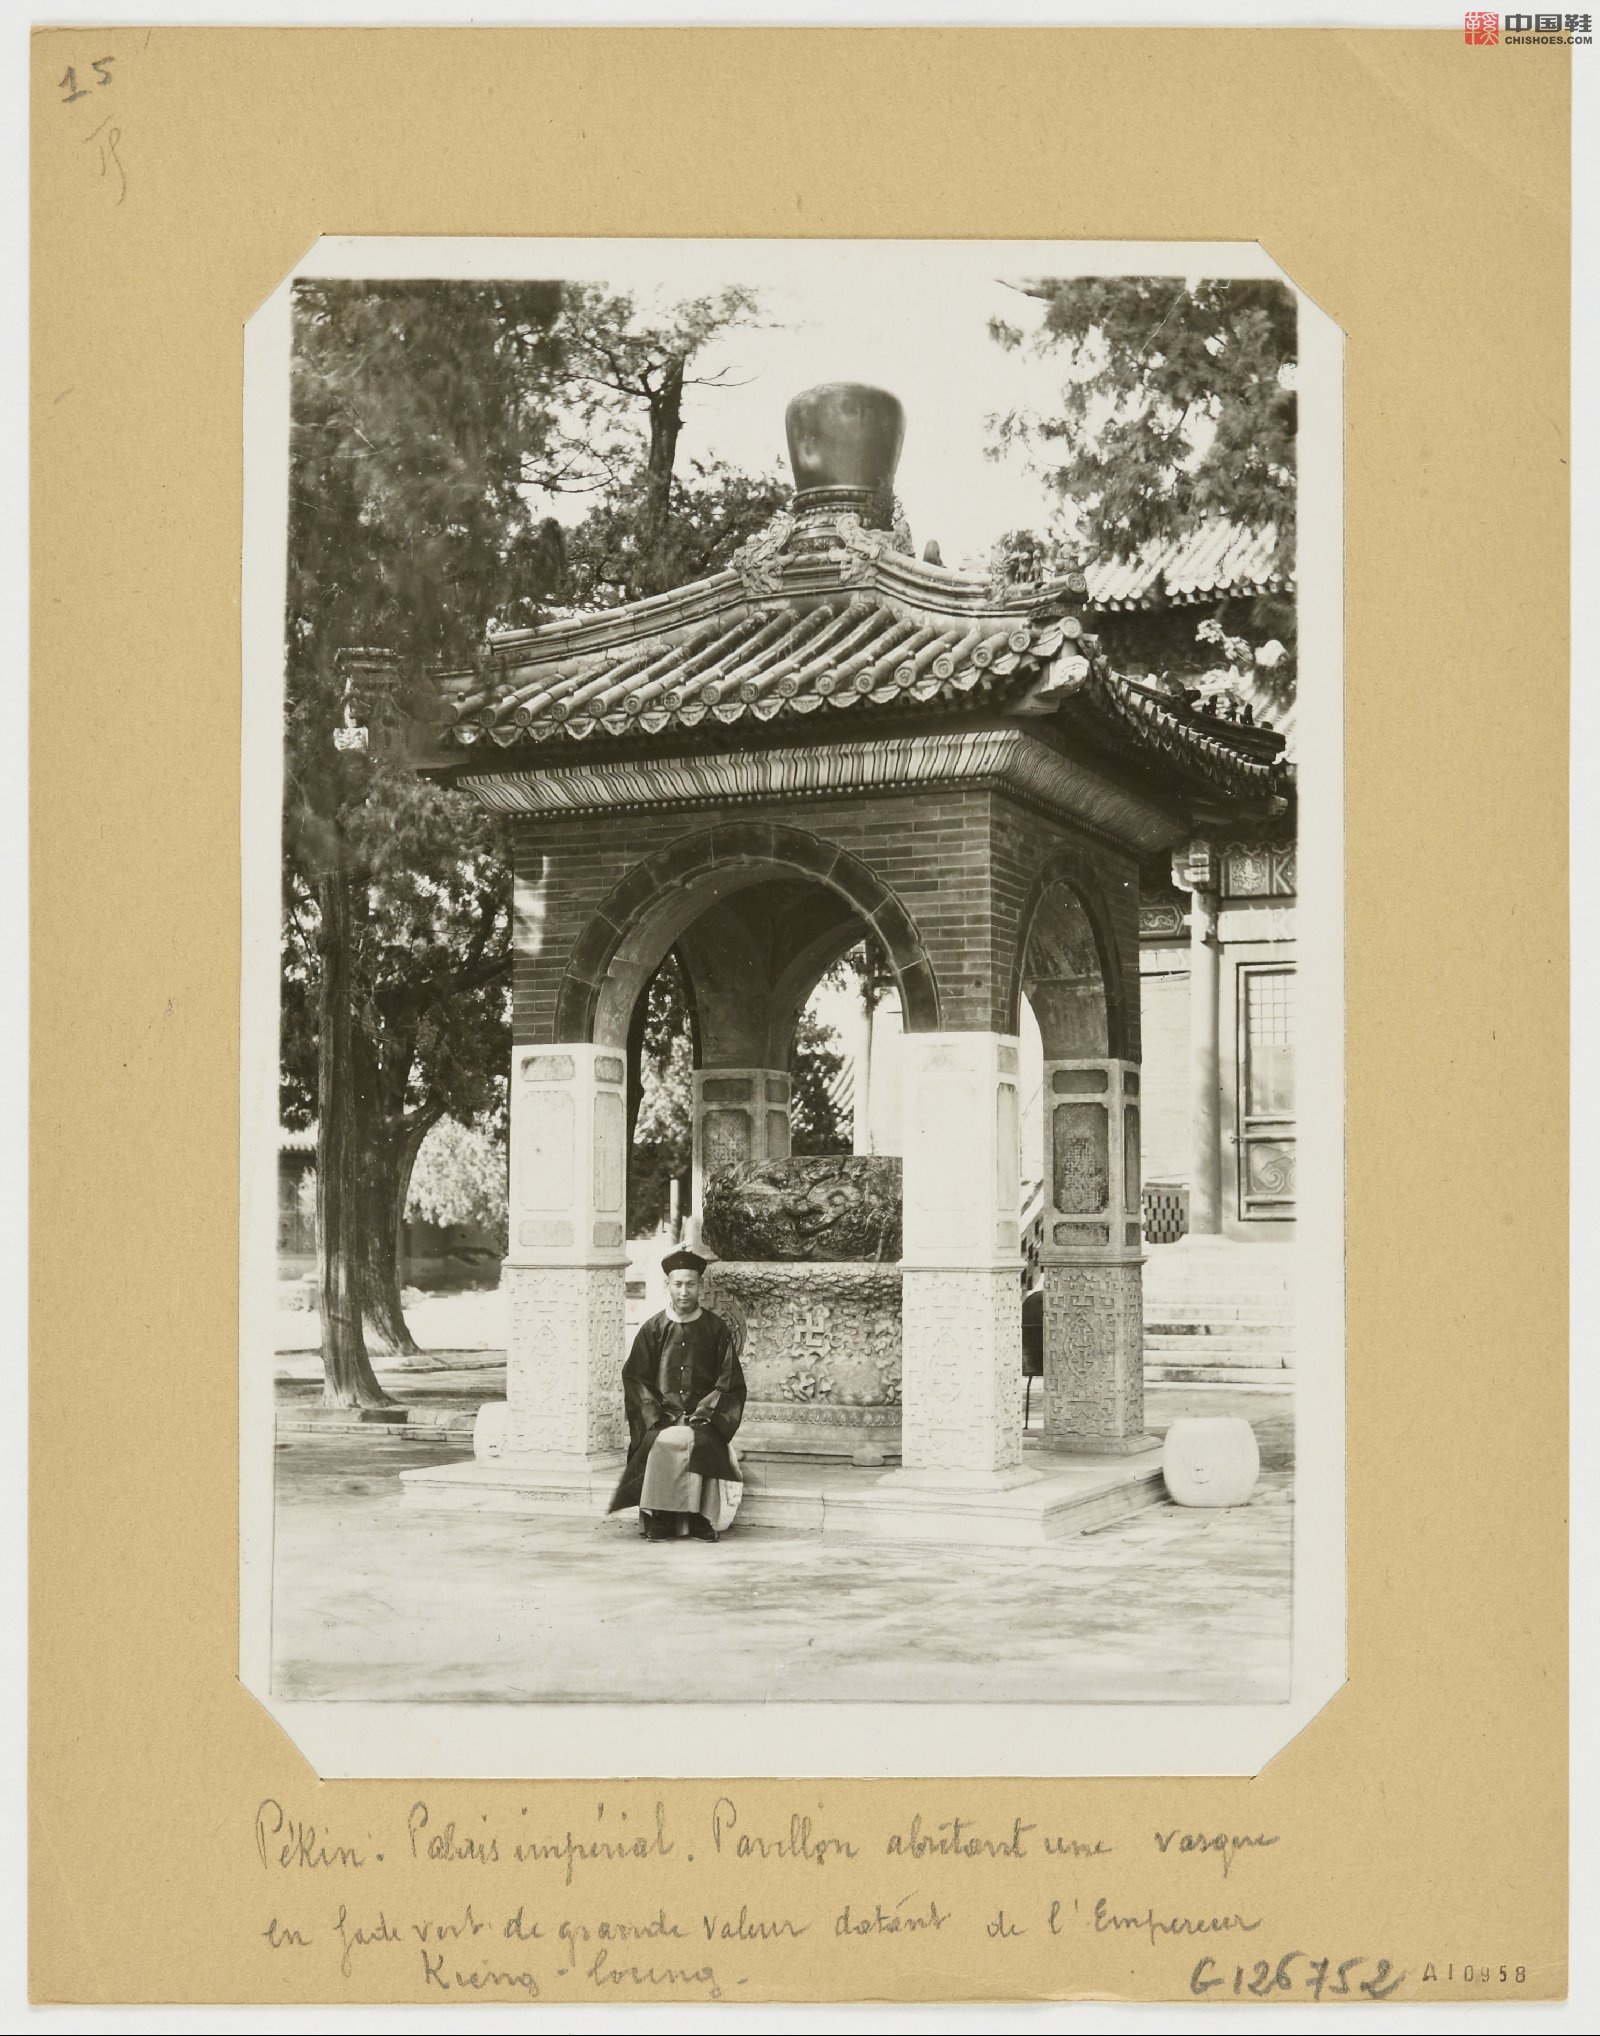 拉里贝的中国影像记录.415幅.By Firmin Laribe.1900-1910年_Page_228.jpg